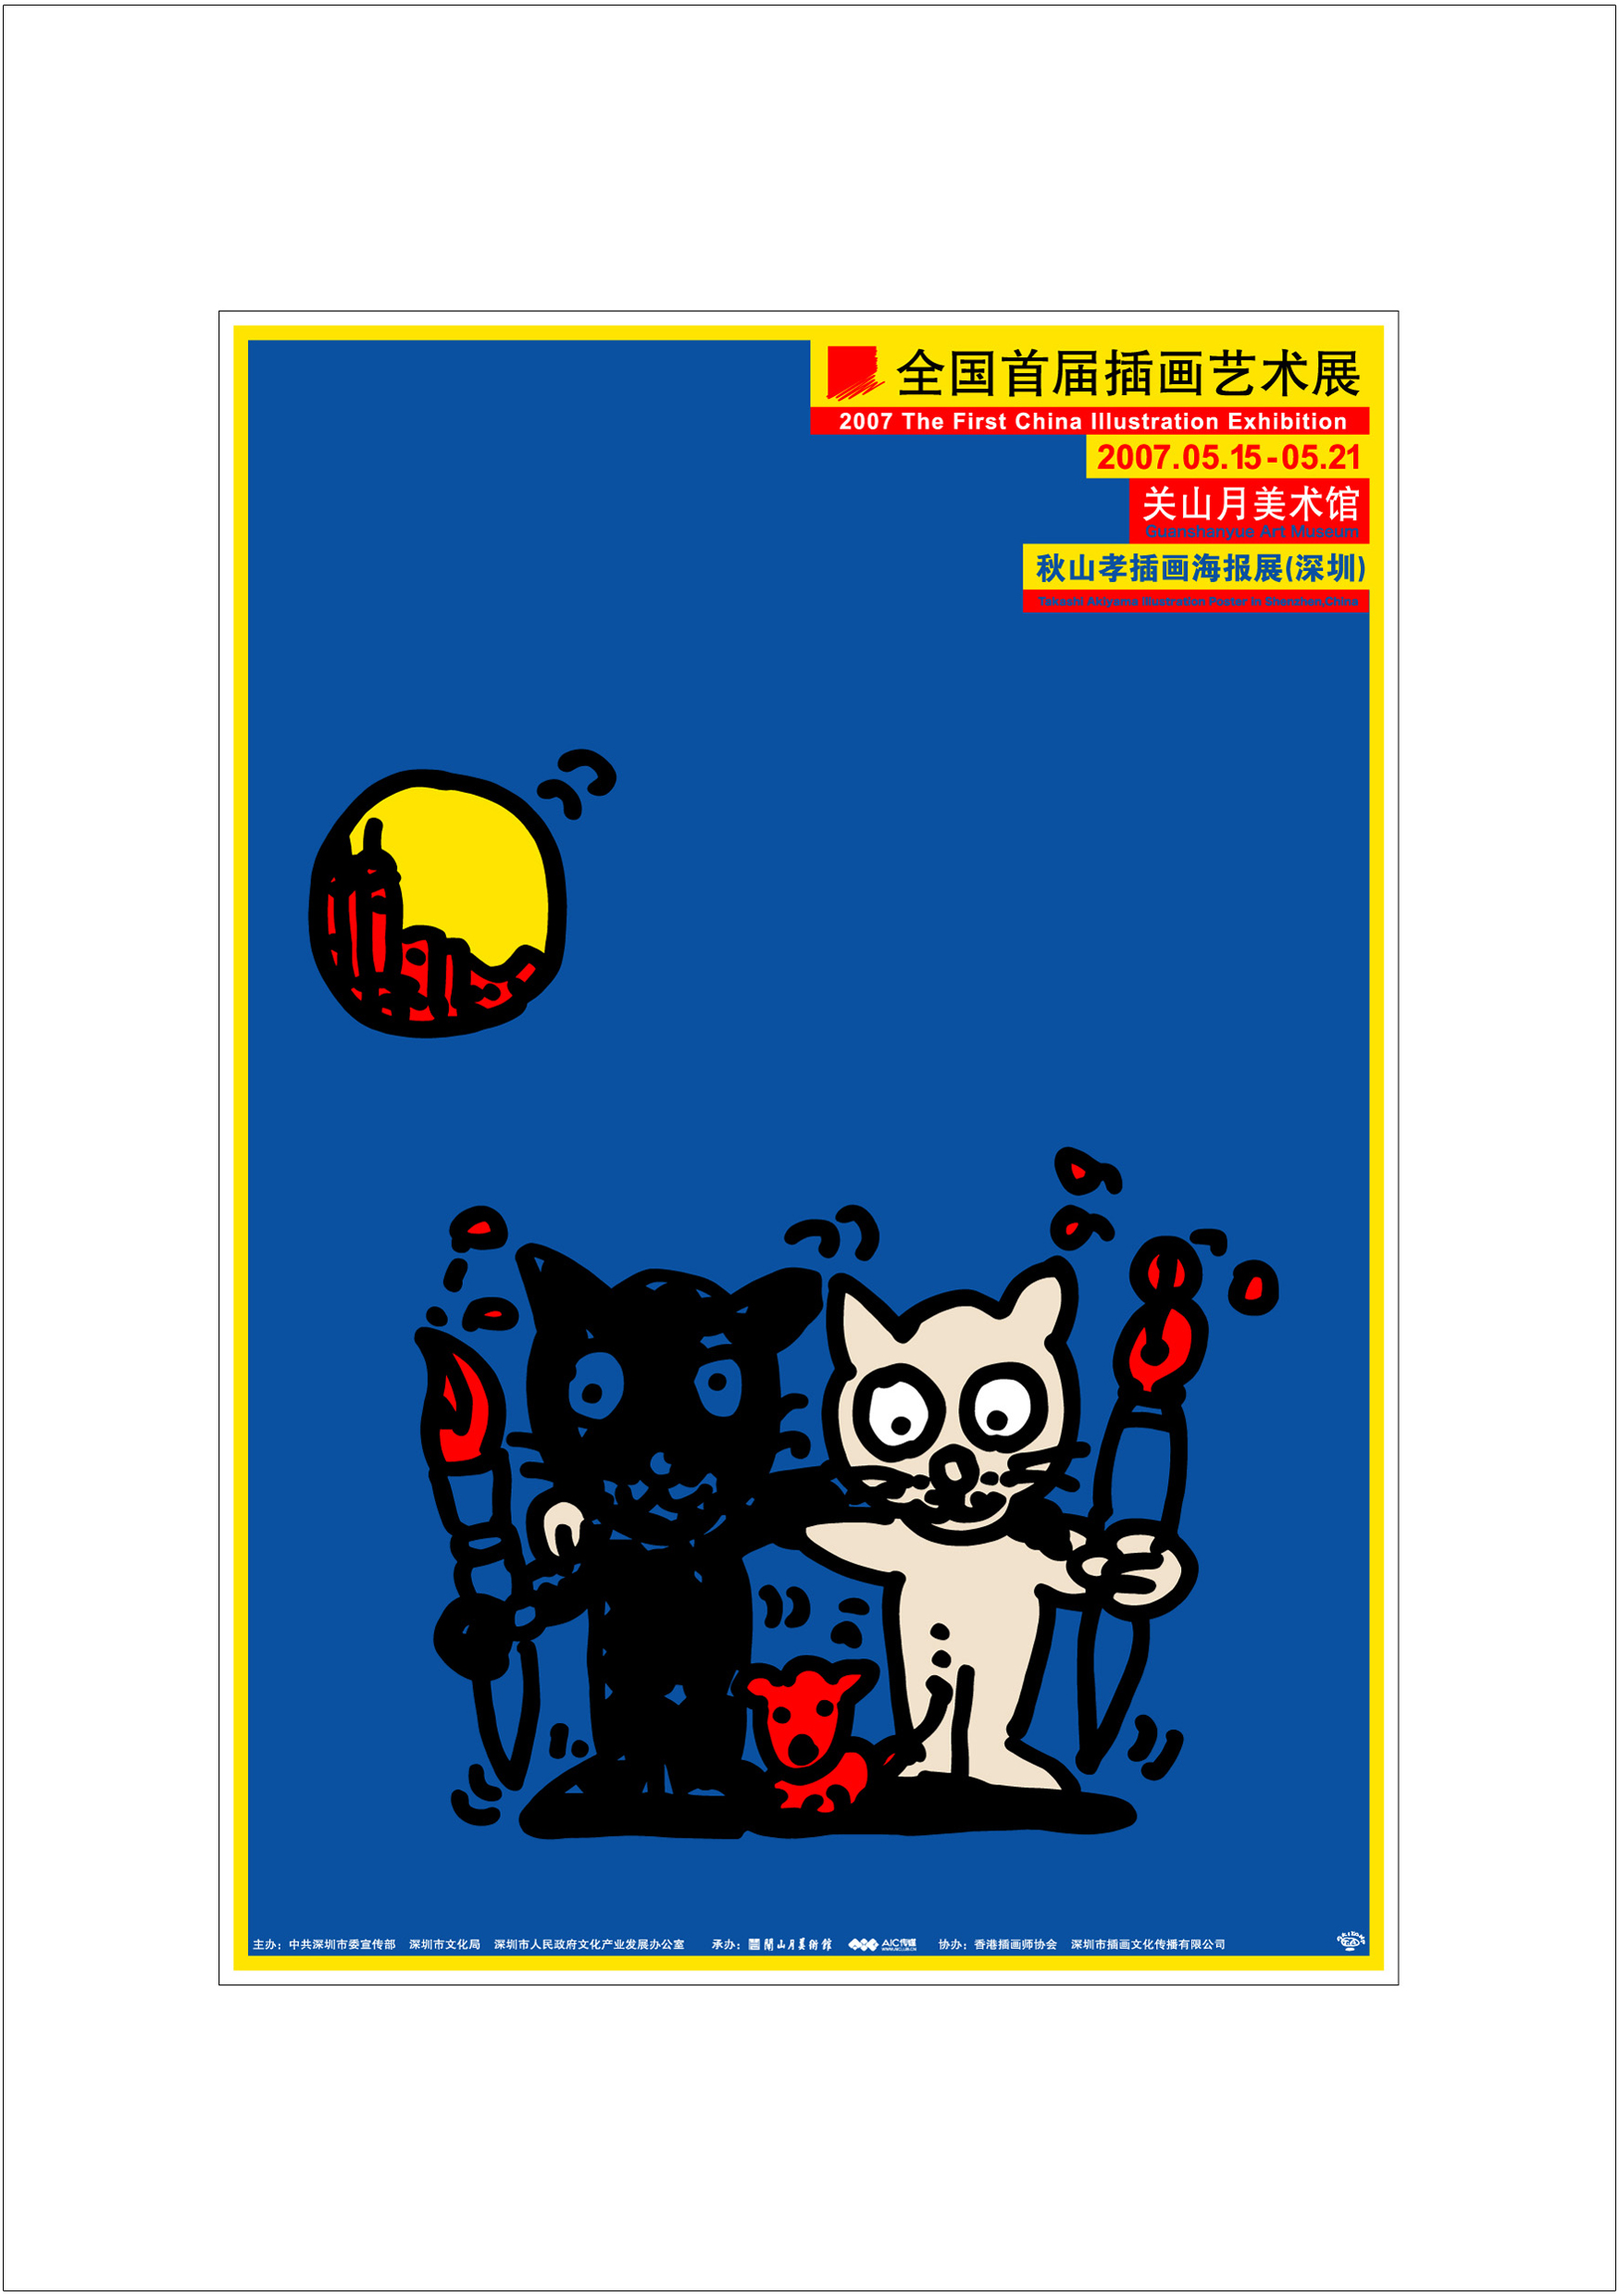 ポスターアーティスト秋山孝が2007年に制作したアートカード「アートカード ポスター 2007 05」